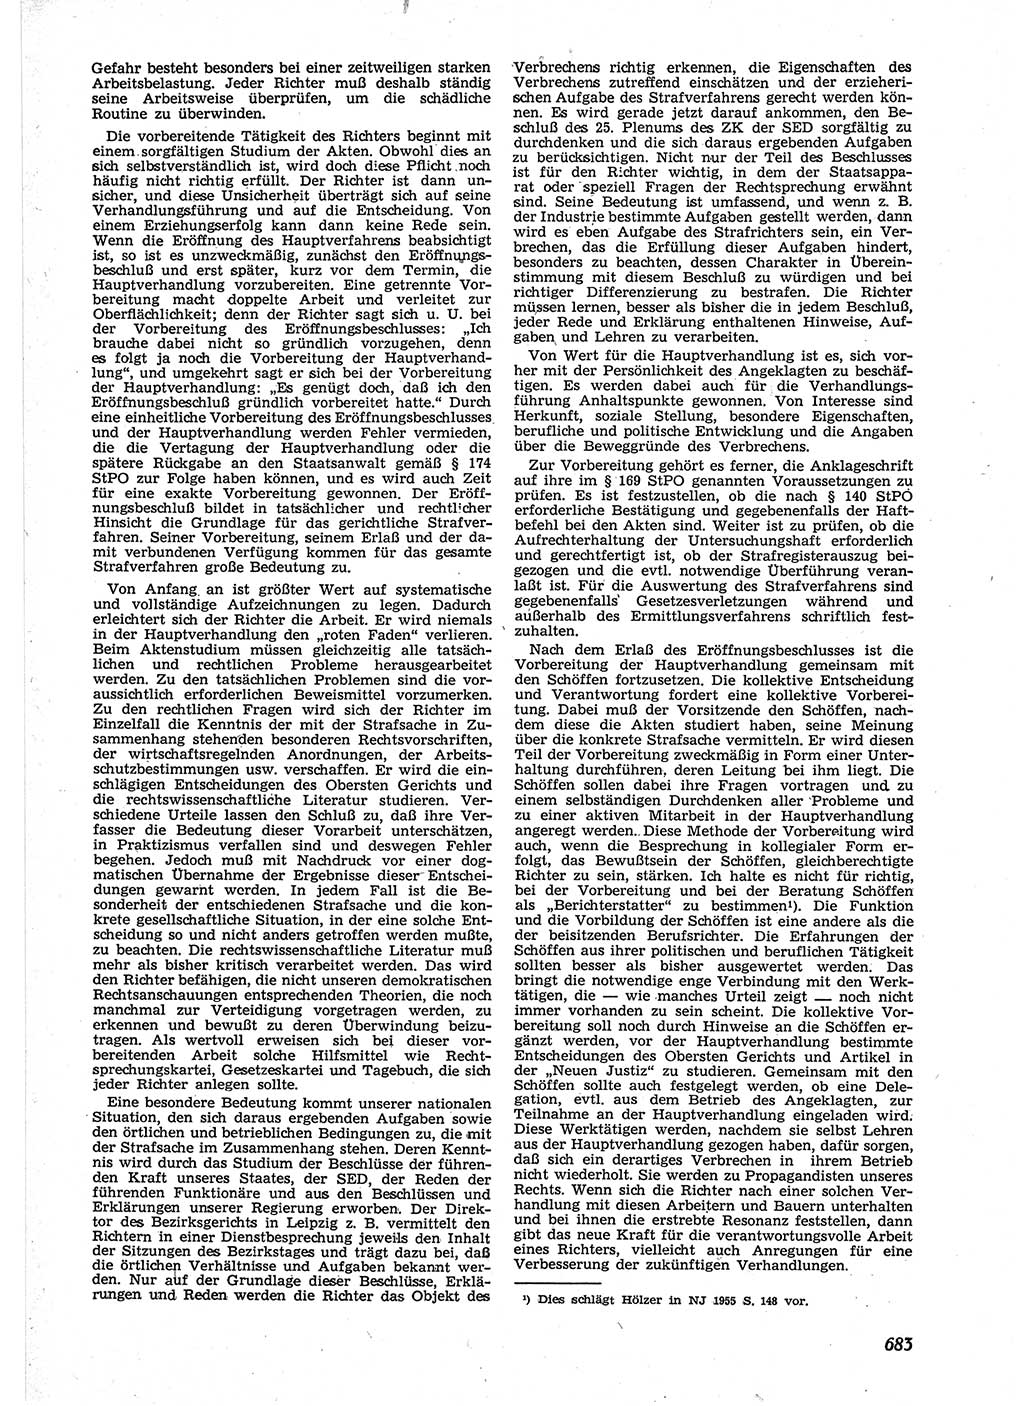 Neue Justiz (NJ), Zeitschrift für Recht und Rechtswissenschaft [Deutsche Demokratische Republik (DDR)], 9. Jahrgang 1955, Seite 683 (NJ DDR 1955, S. 683)